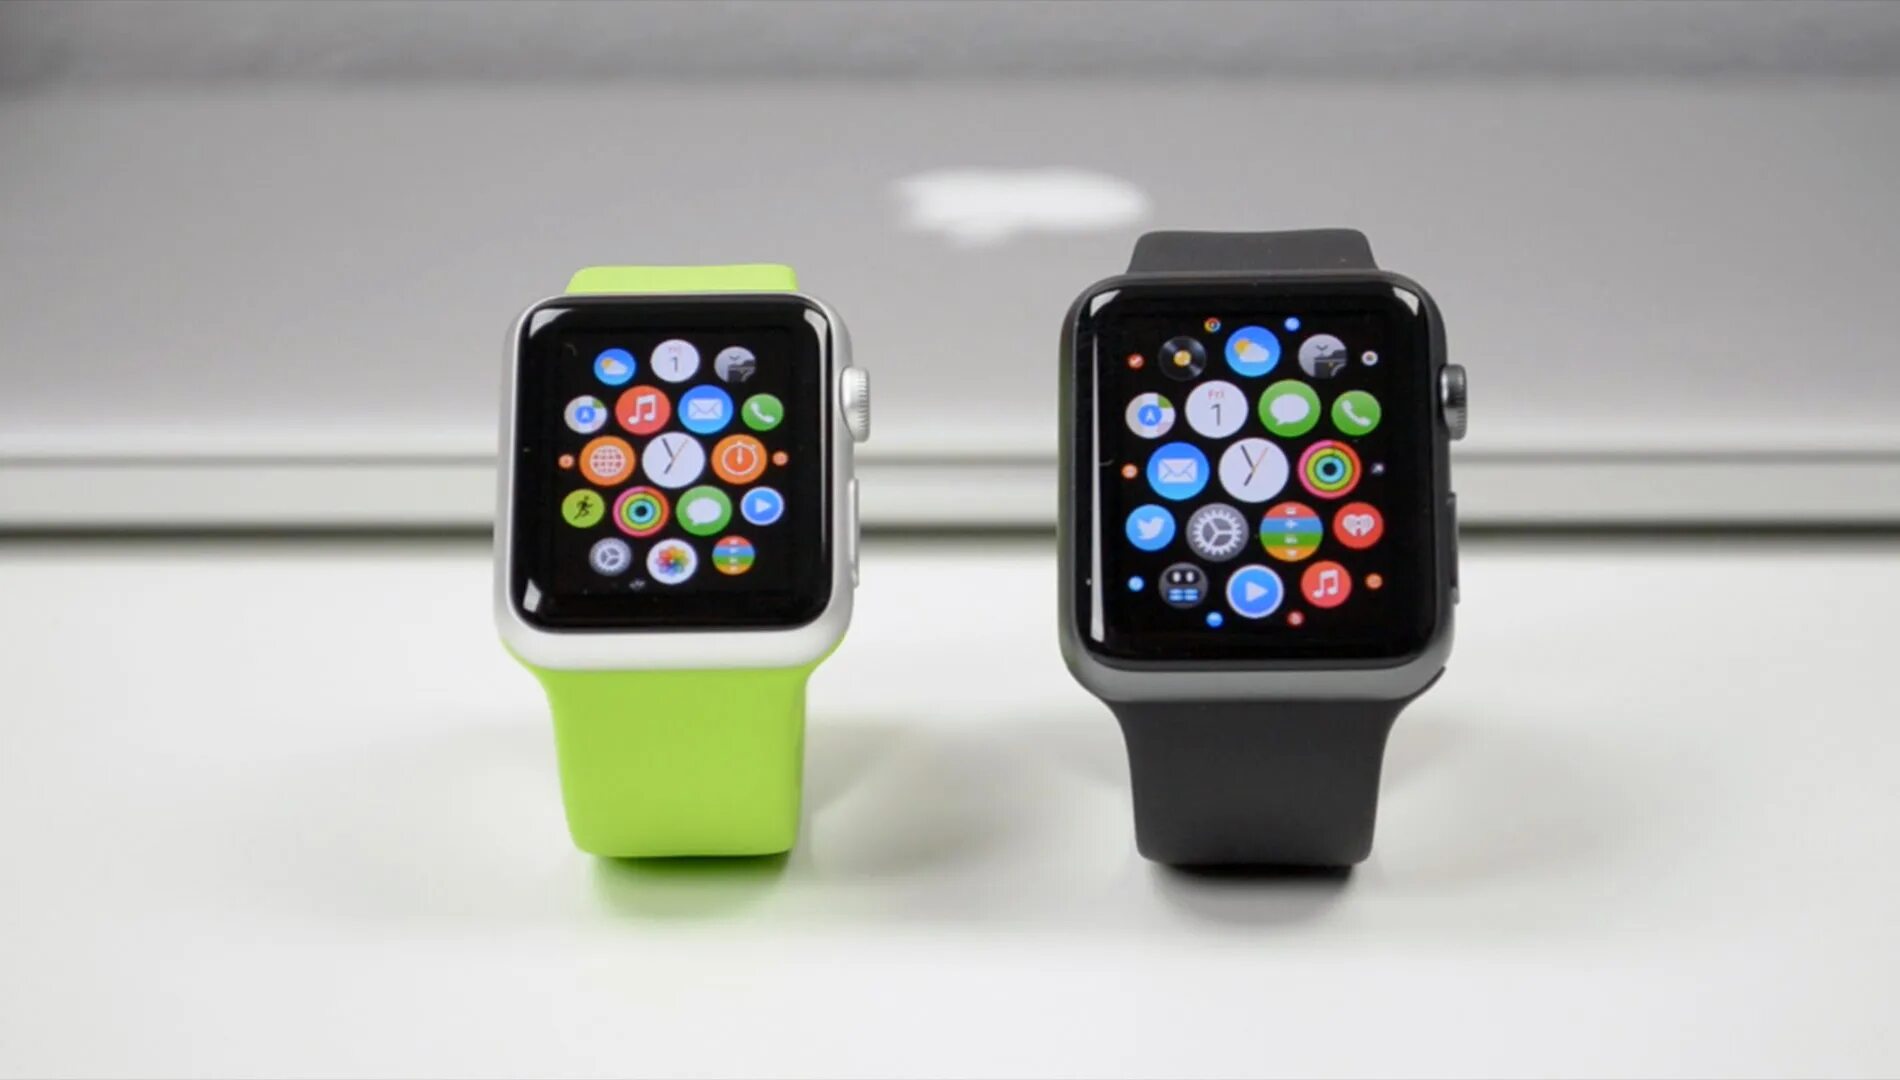 Часы эпл вотч 3 38 мм. Apple watch 3 42 mm. Apple watch 38 vs 42 mm. Apple watch Series 3 38mm. Видео часов apple